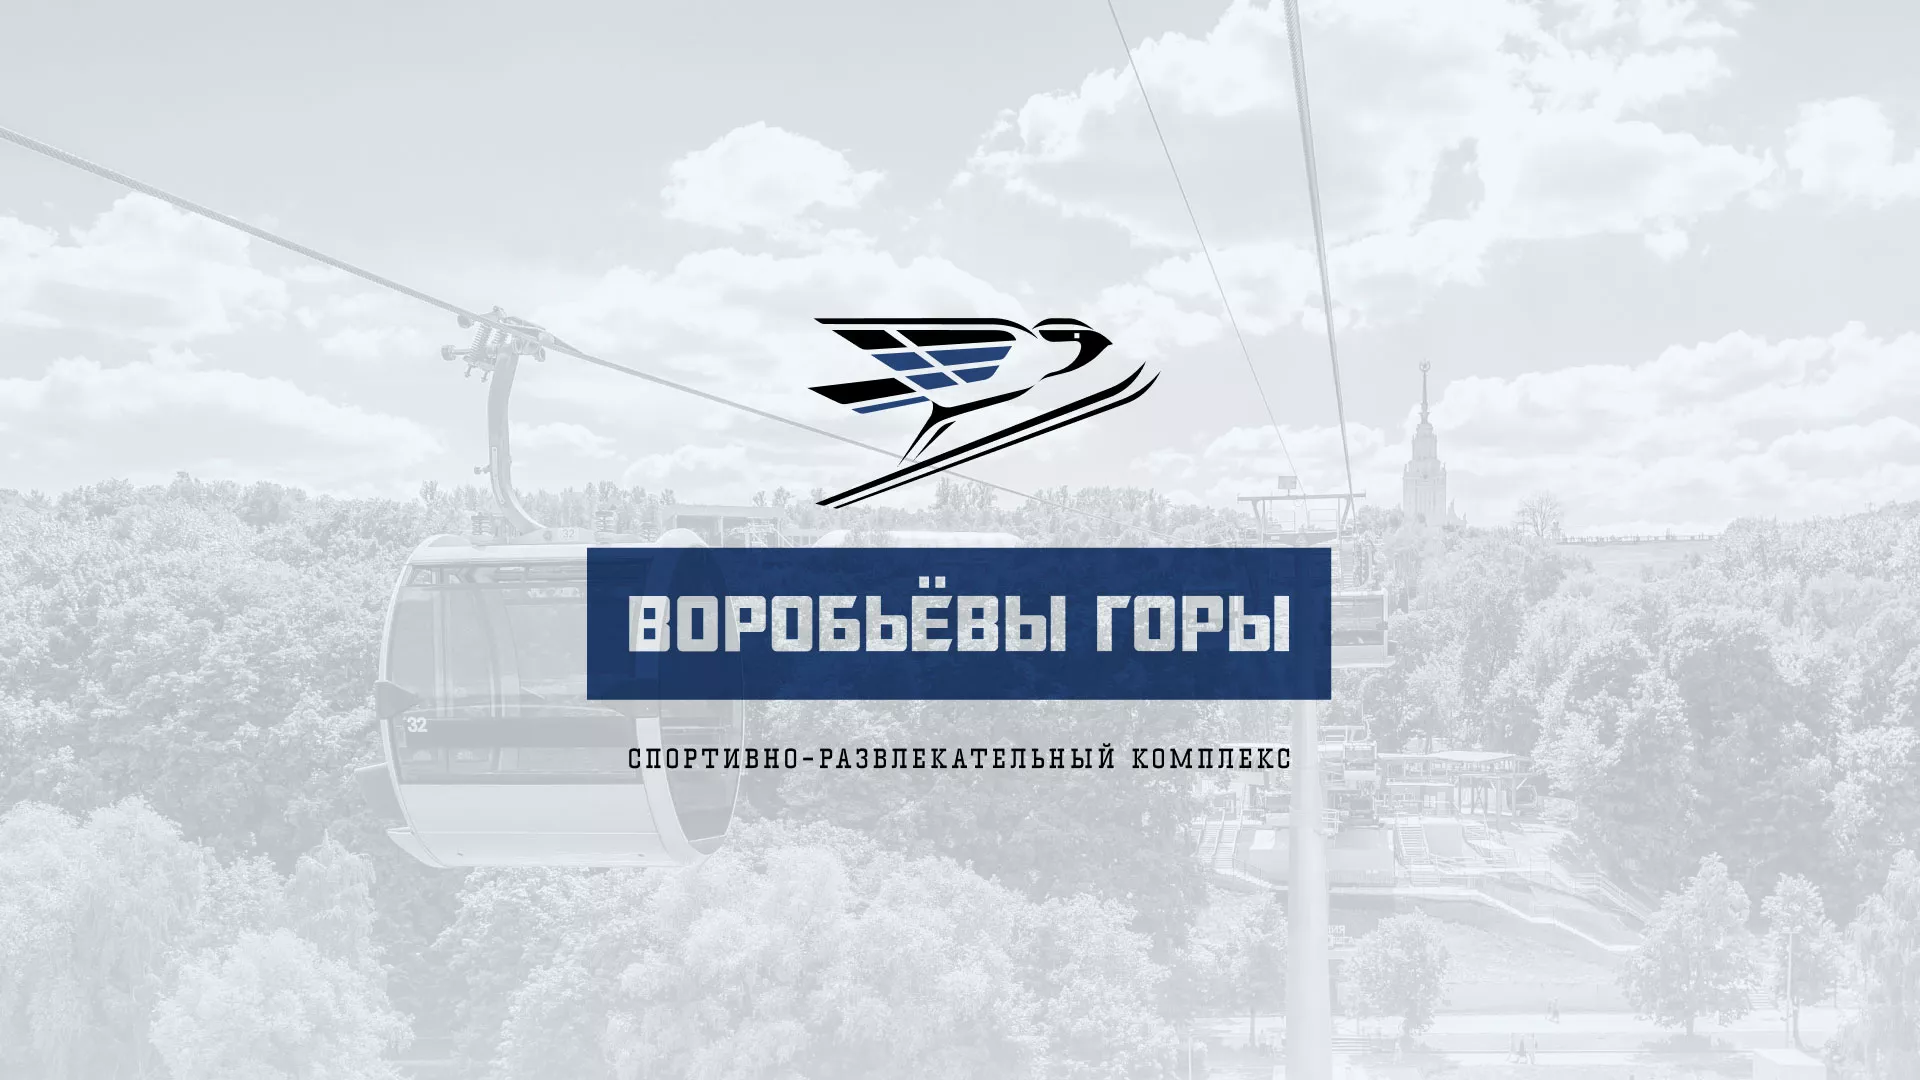 Разработка сайта в Бердске для спортивно-развлекательного комплекса «Воробьёвы горы»